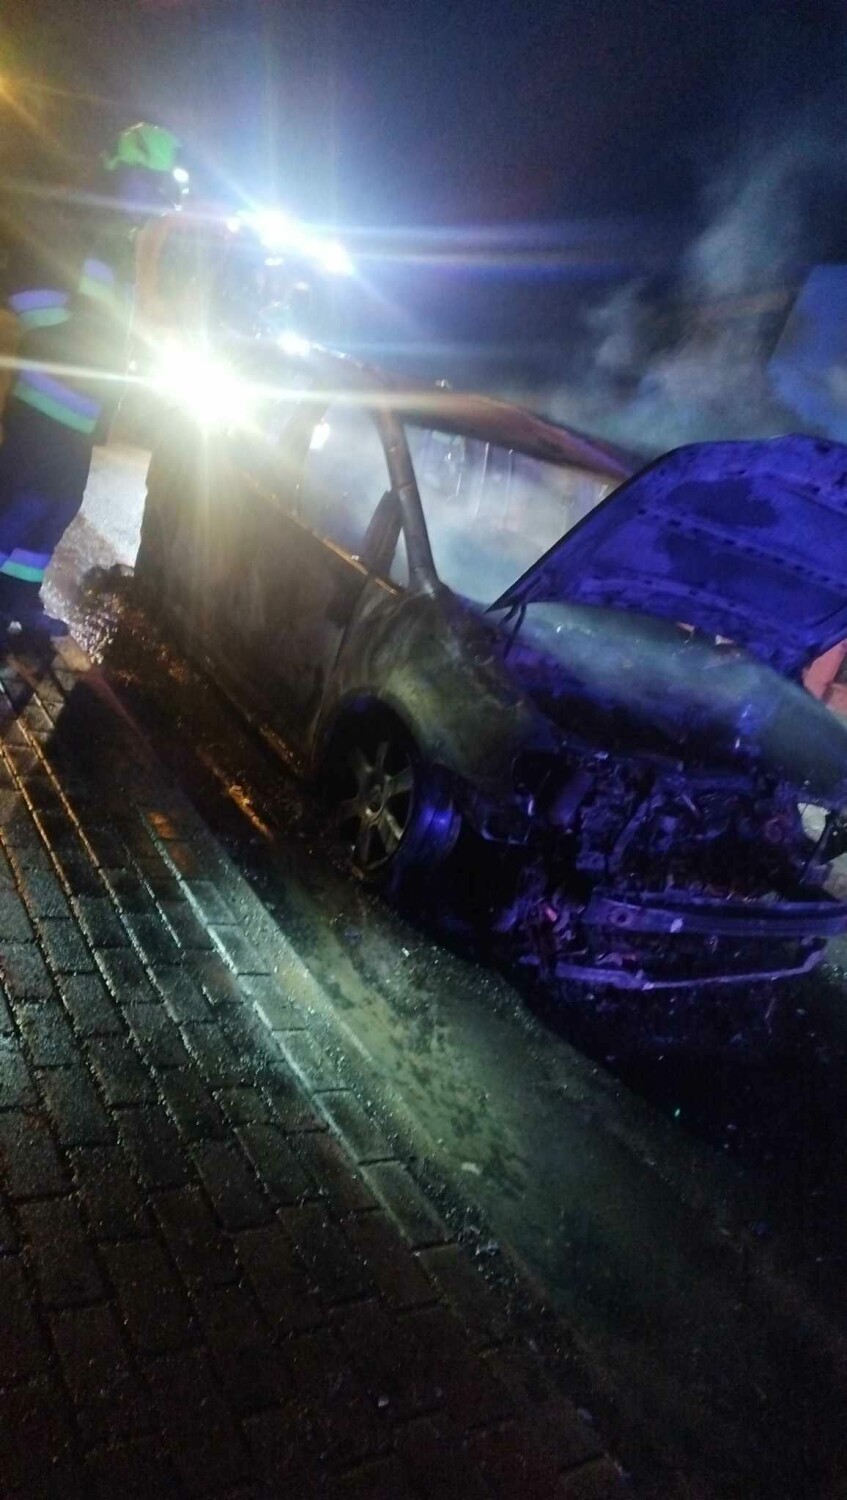 W Lesznie spalił się samochód. Strażacy: Przyczyną był prawdopodobnie samozapłon [ZDJĘCIA]